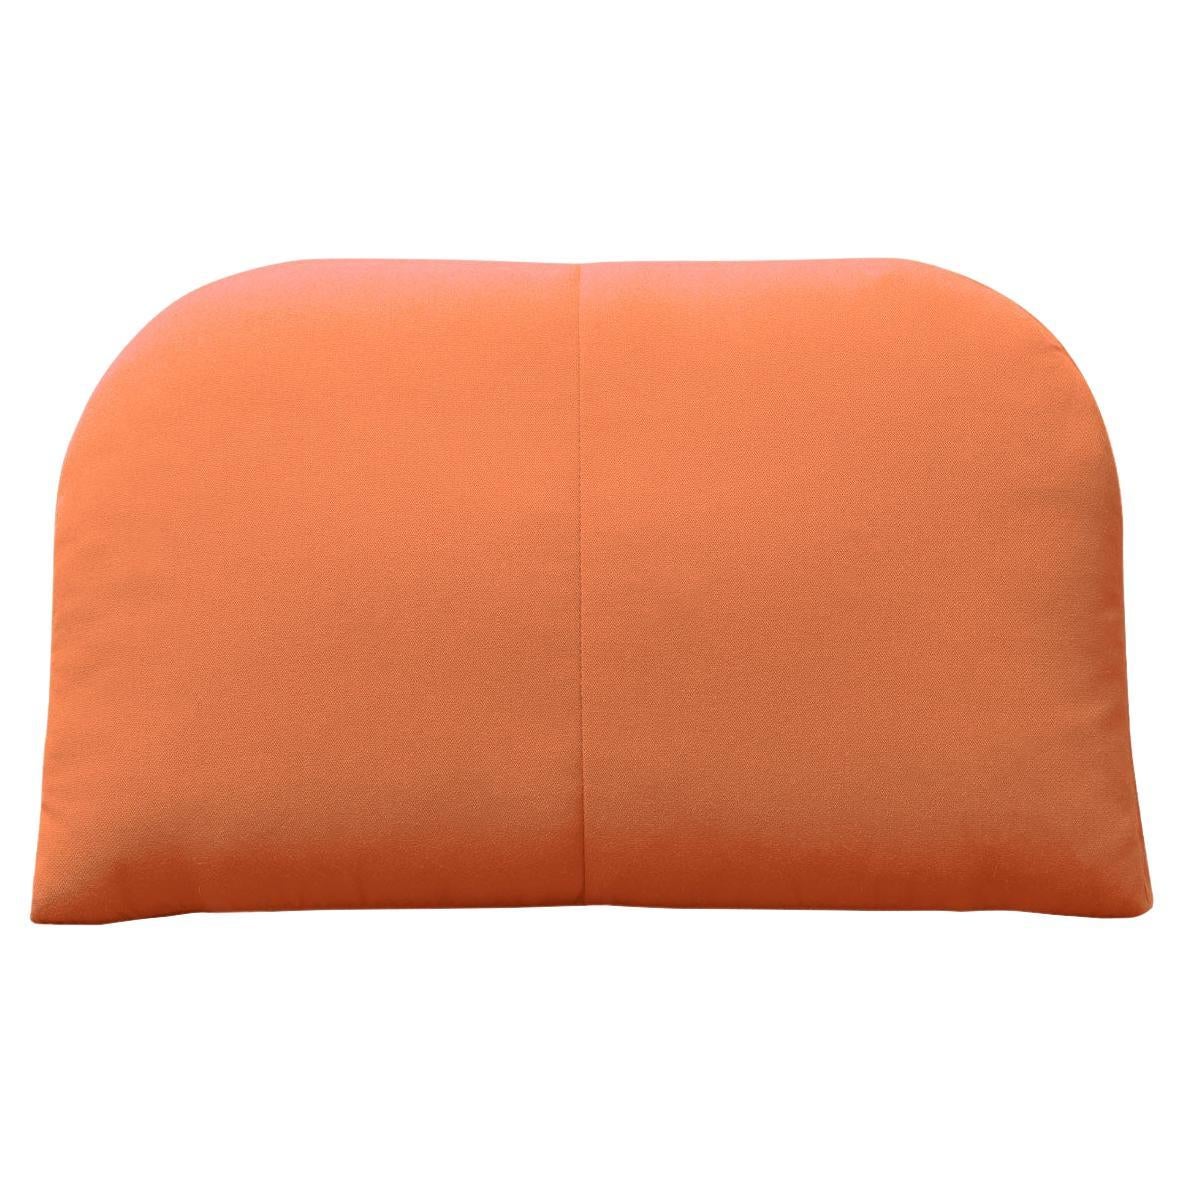 Bend Goods - Arc Throw Pillow in Melon Sunbrella